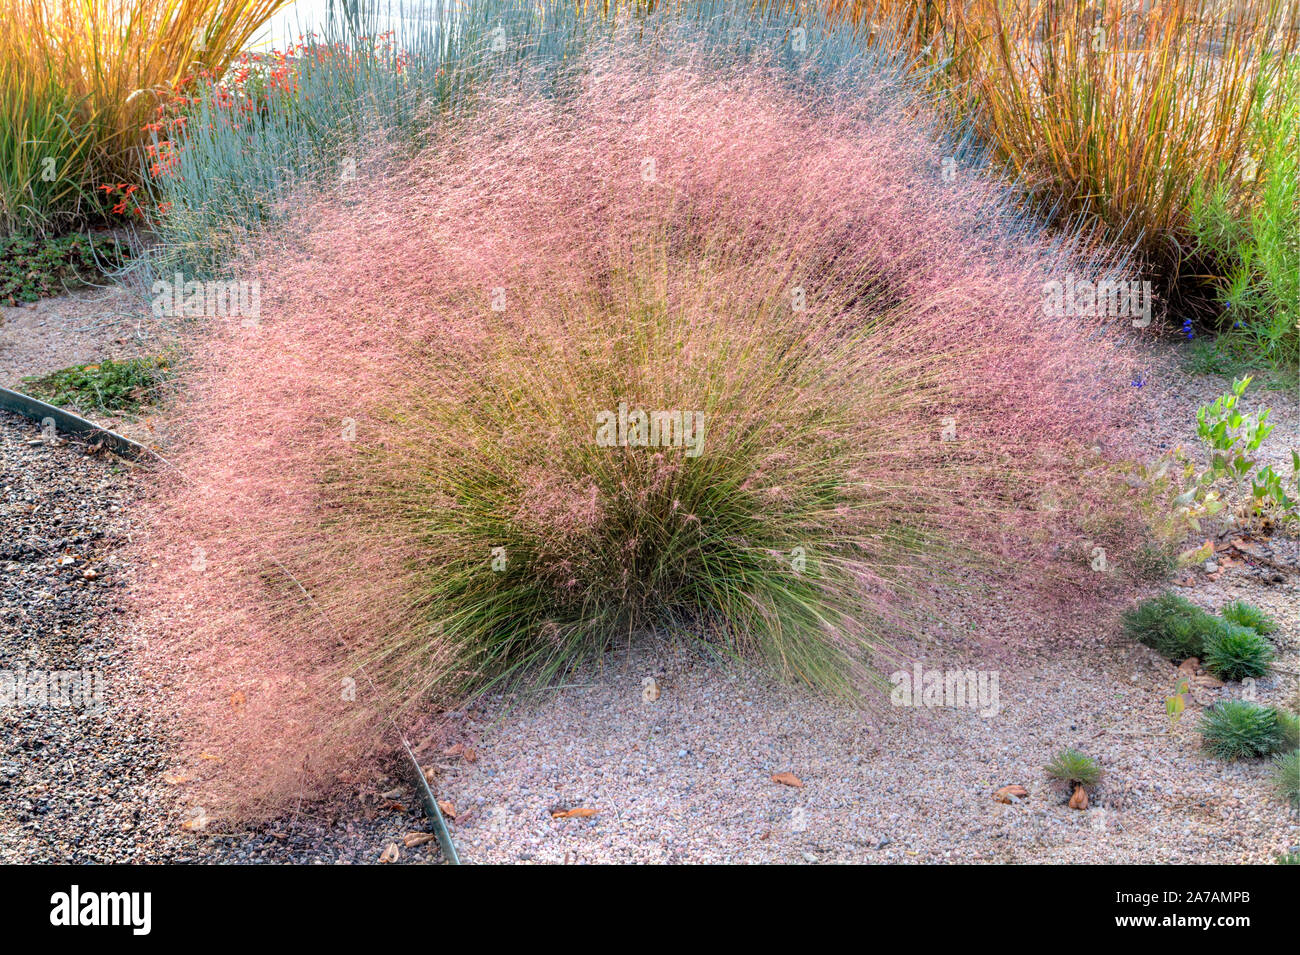 Un ritratto di un'erba ornamentale denominata imperterrito Muhly Rubino e talvolta chiamato autunno tizzi. Foto Stock